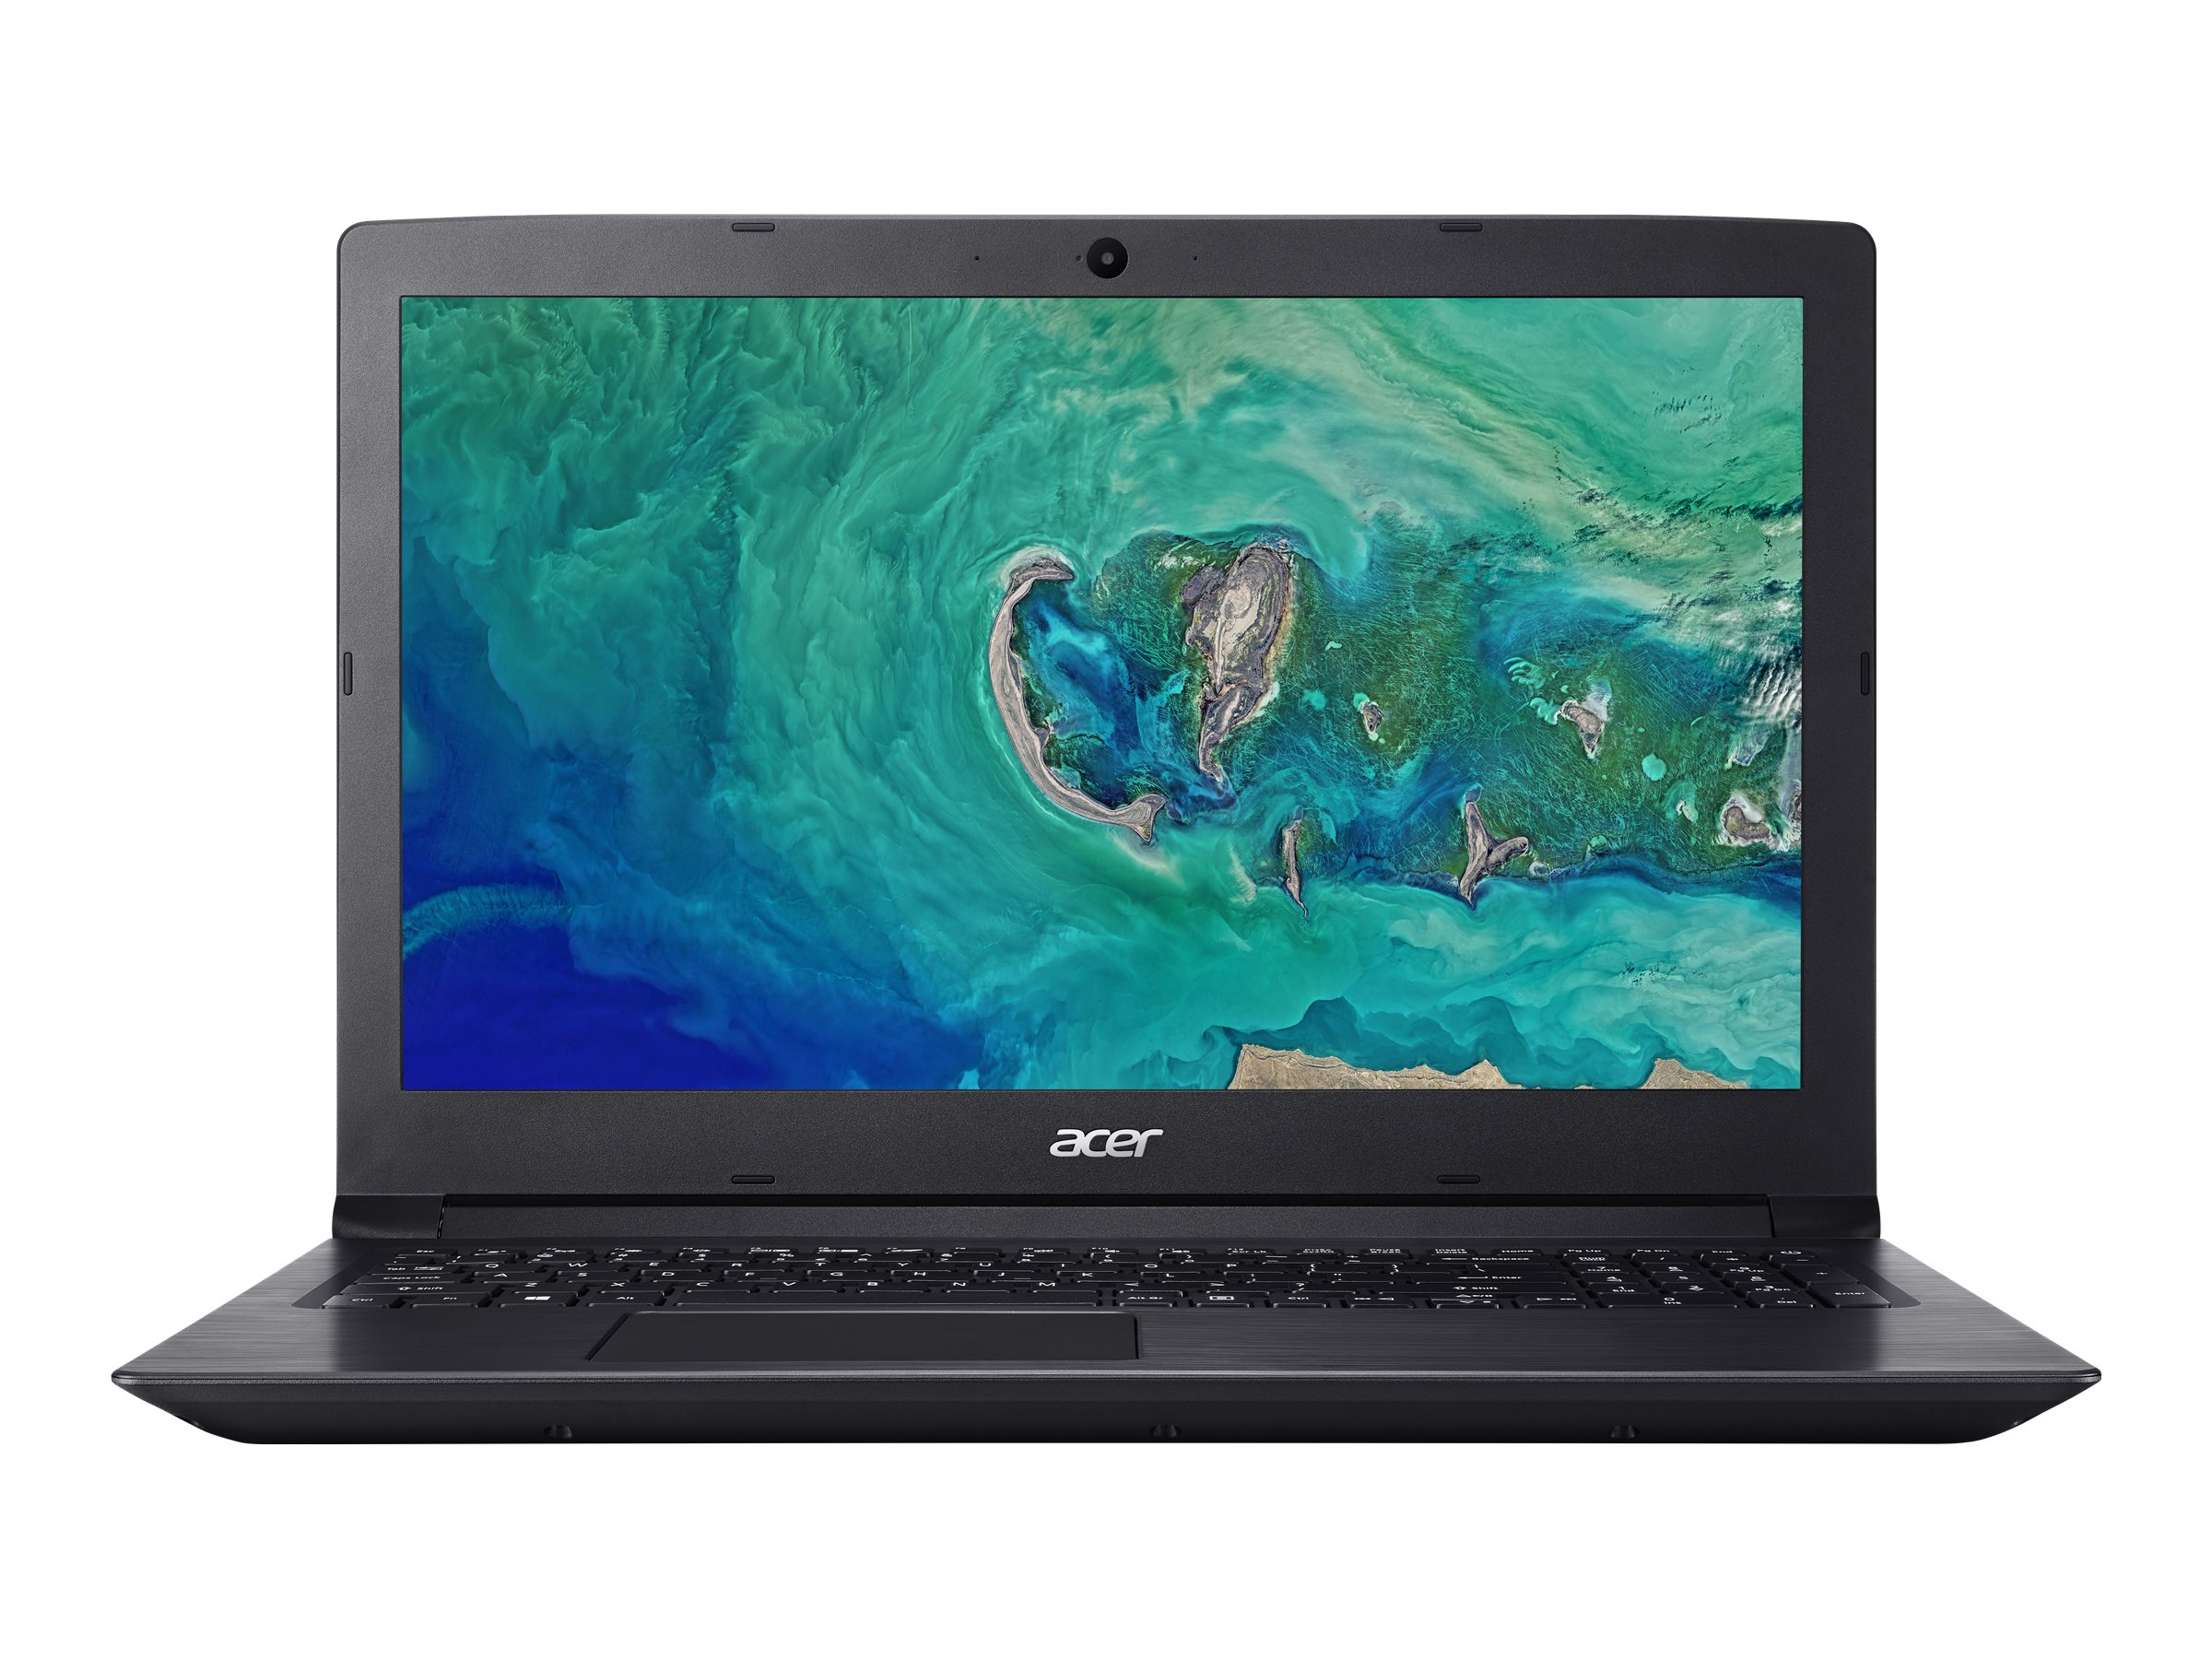 Acer Aspire 3 A315-51 Review